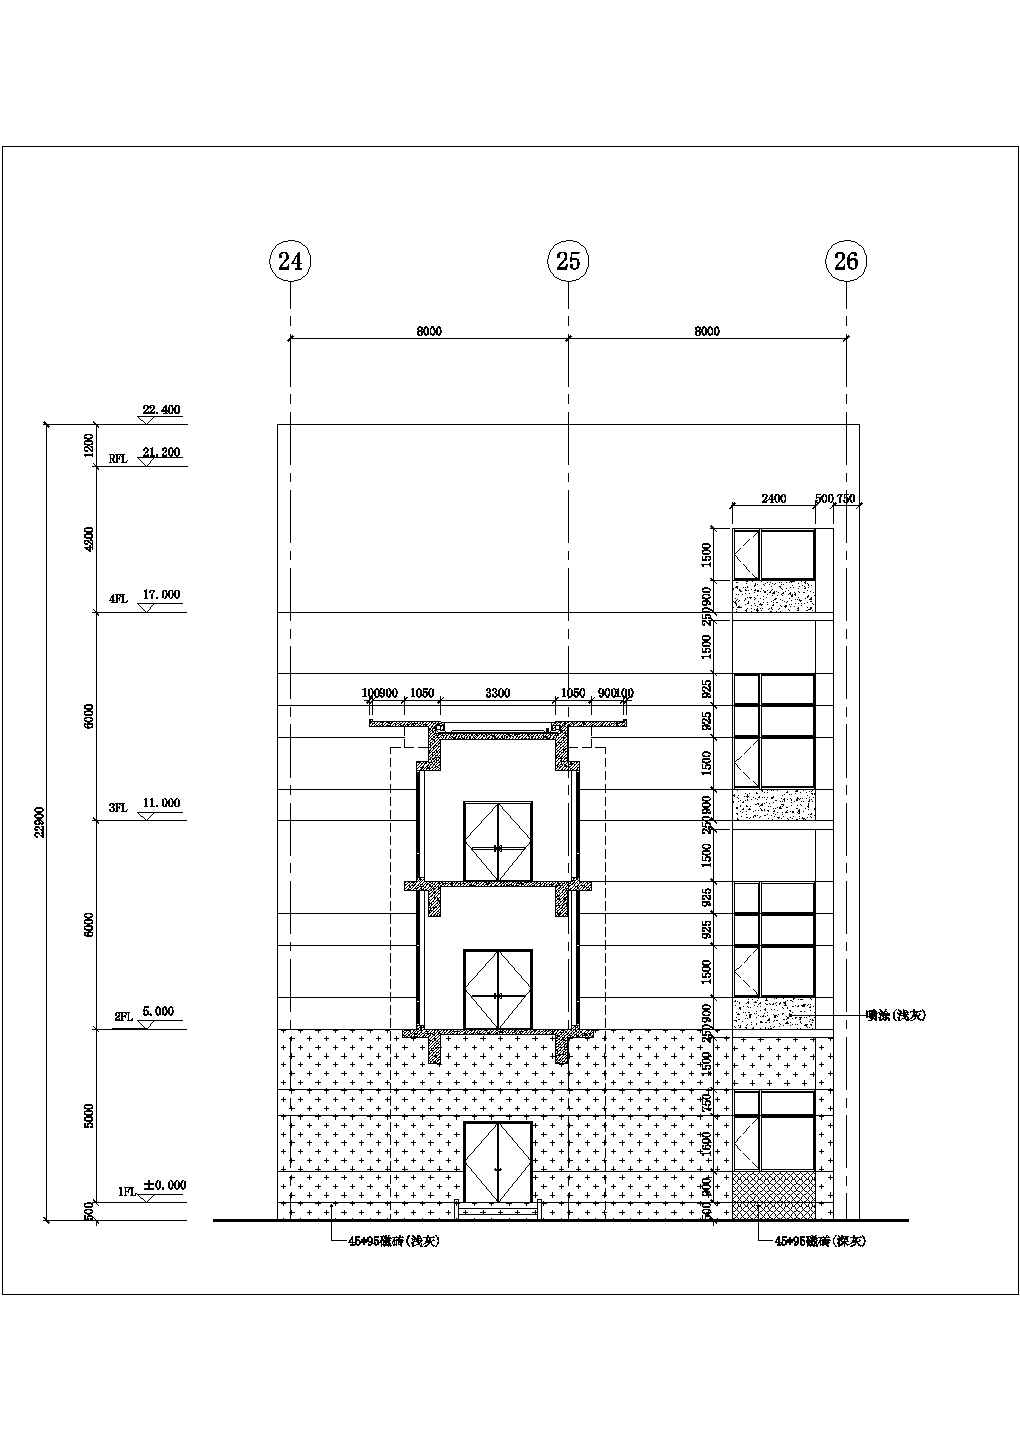 厂房设计_天津市某五金厂3层厂房全套建筑设计CAD图纸